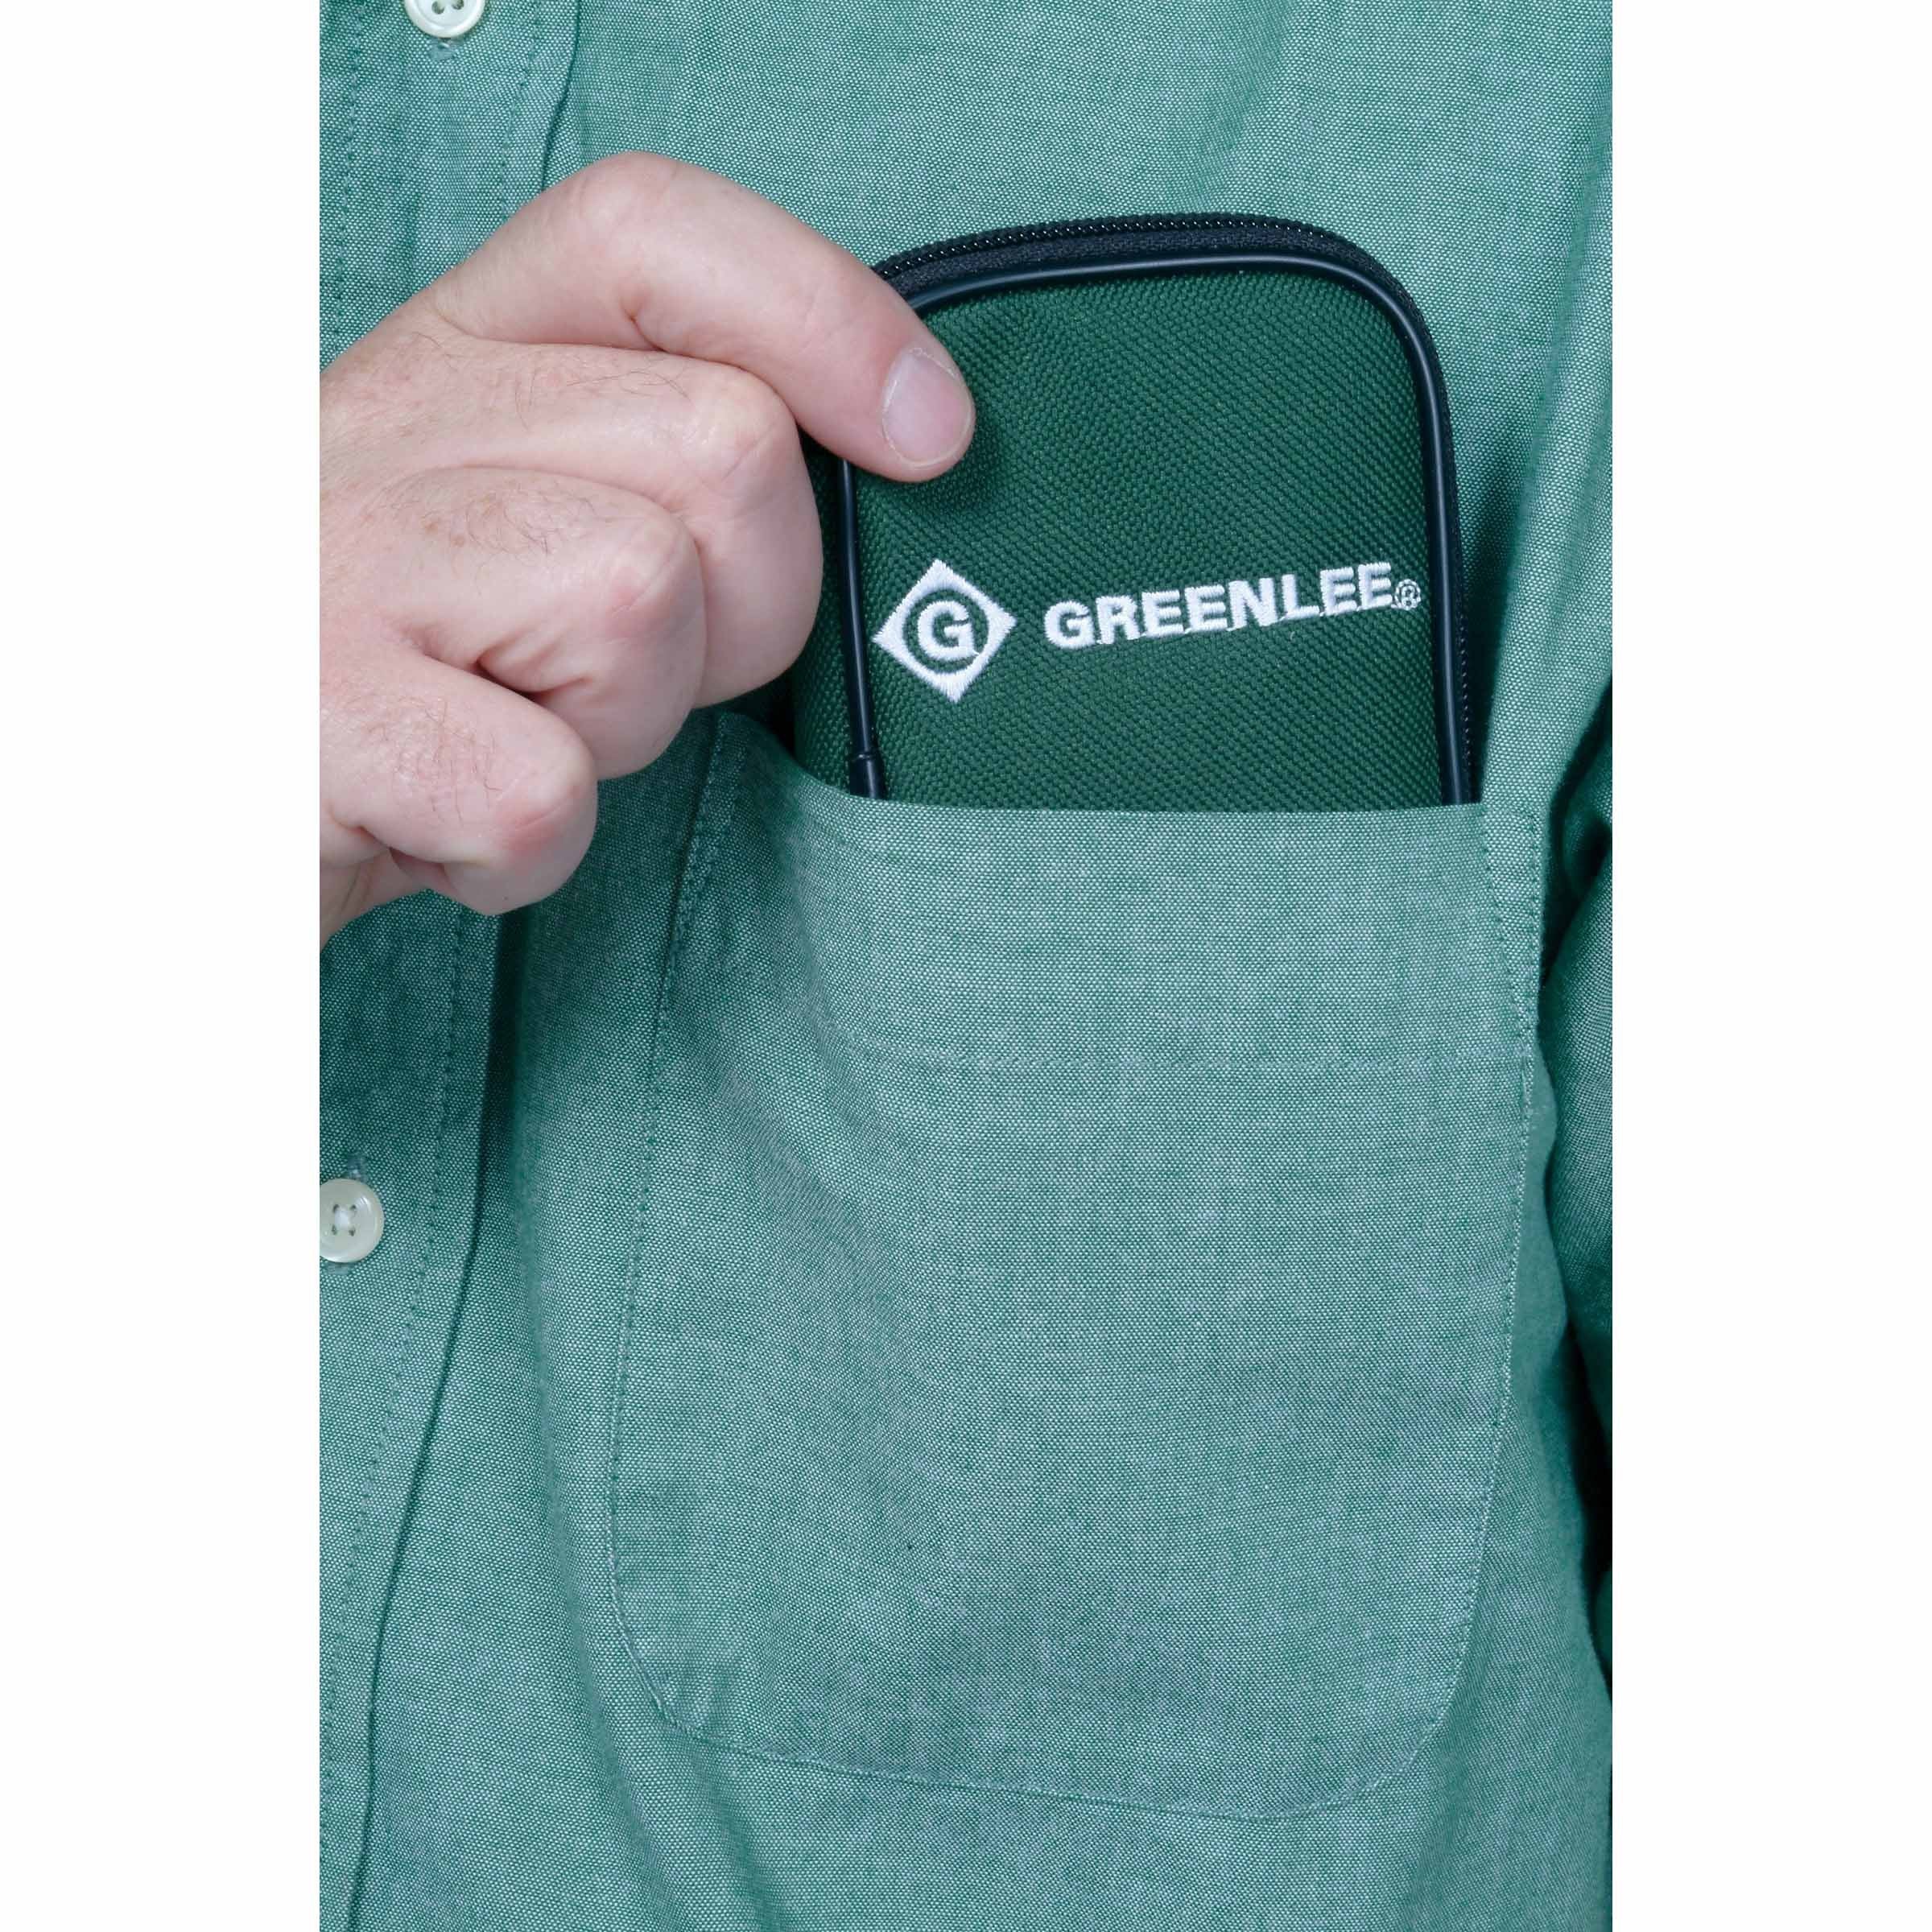 Greenlee PDMM-20 Pocket Multimeter